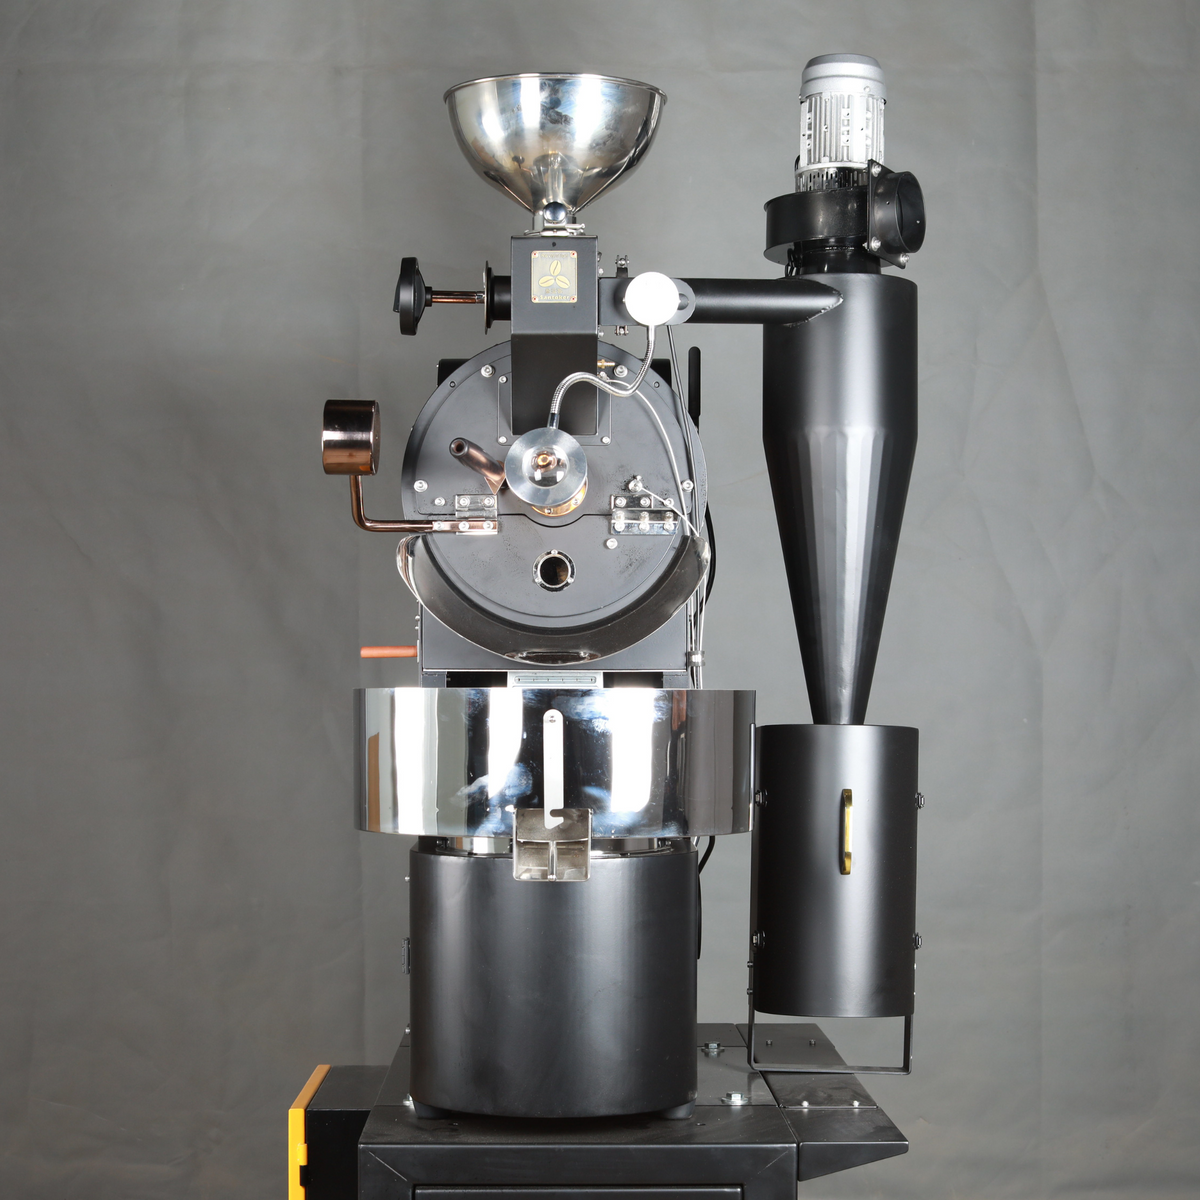 Santoker R3 自动咖啡烘焙机 - 3公斤/批